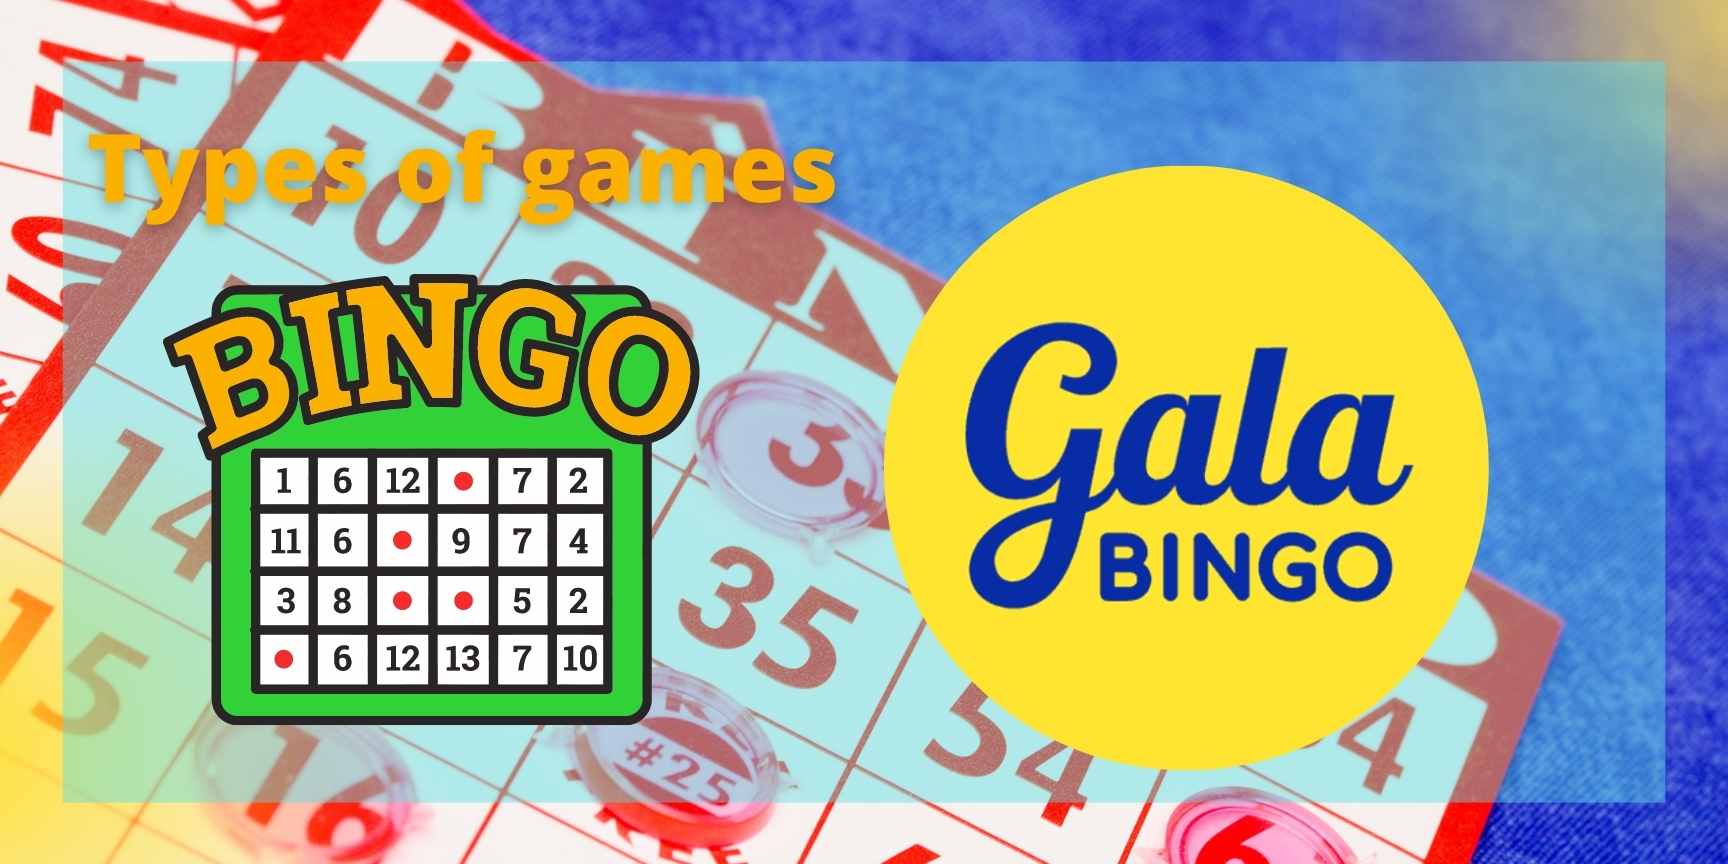 Gala Bingo casino games